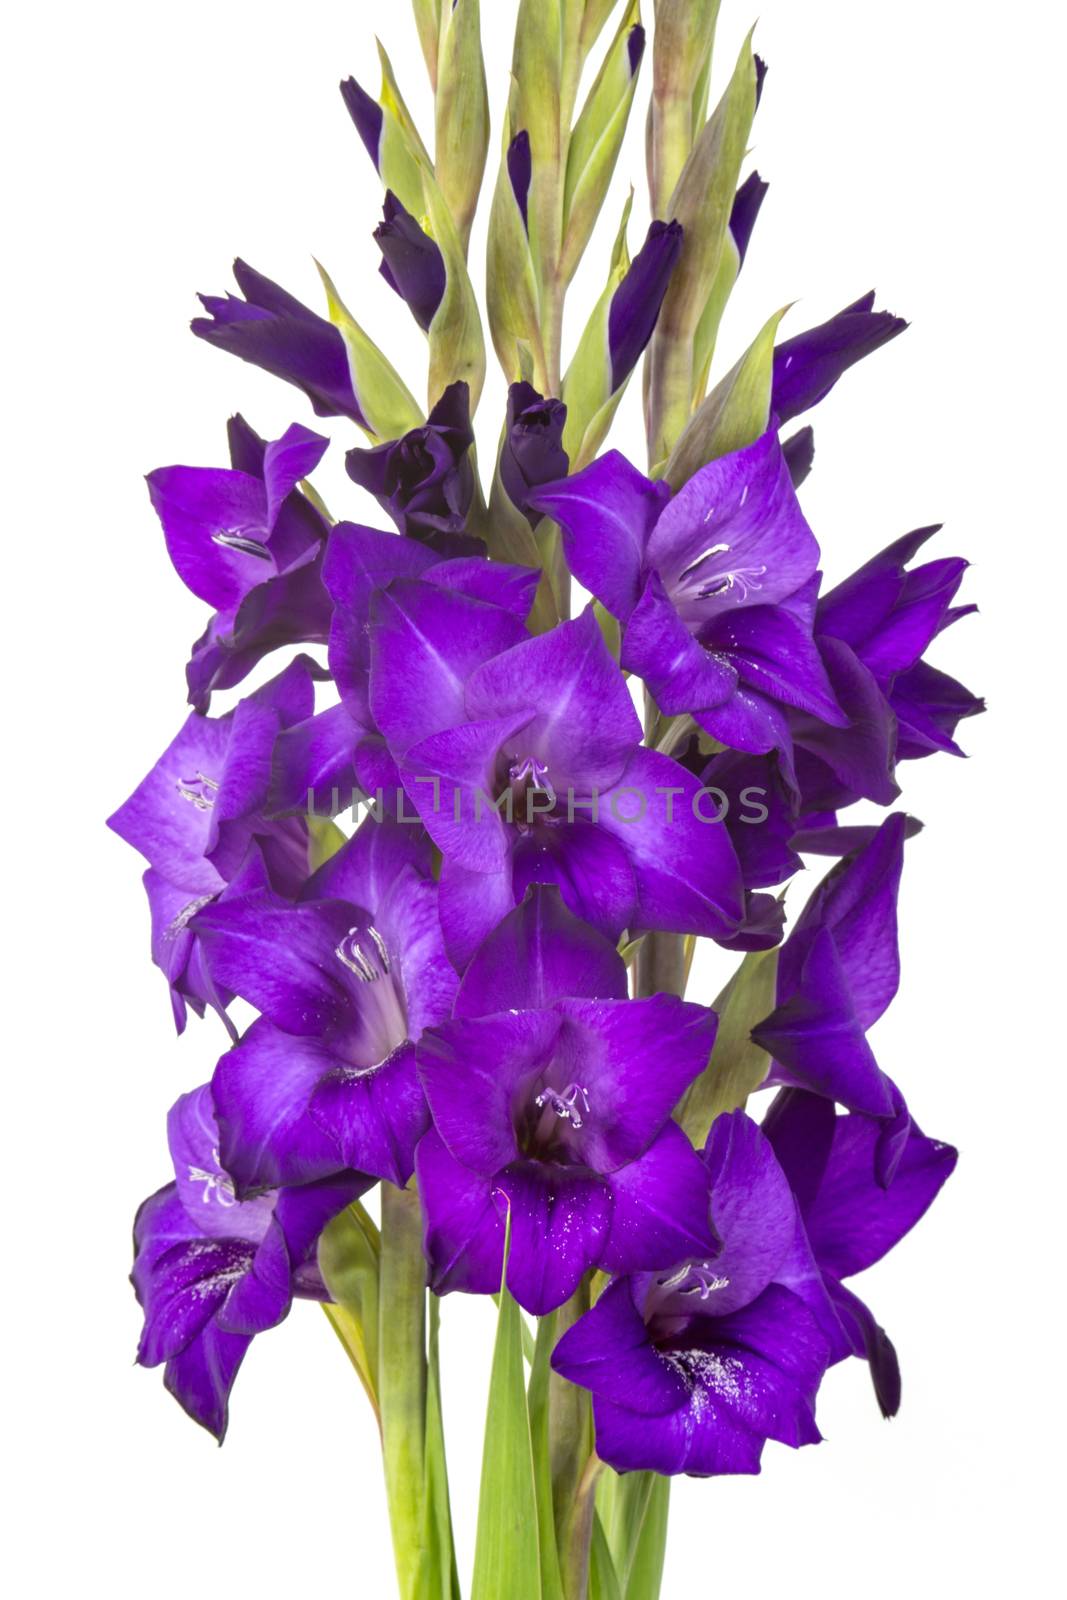 purple gladiolus flowers by miradrozdowski